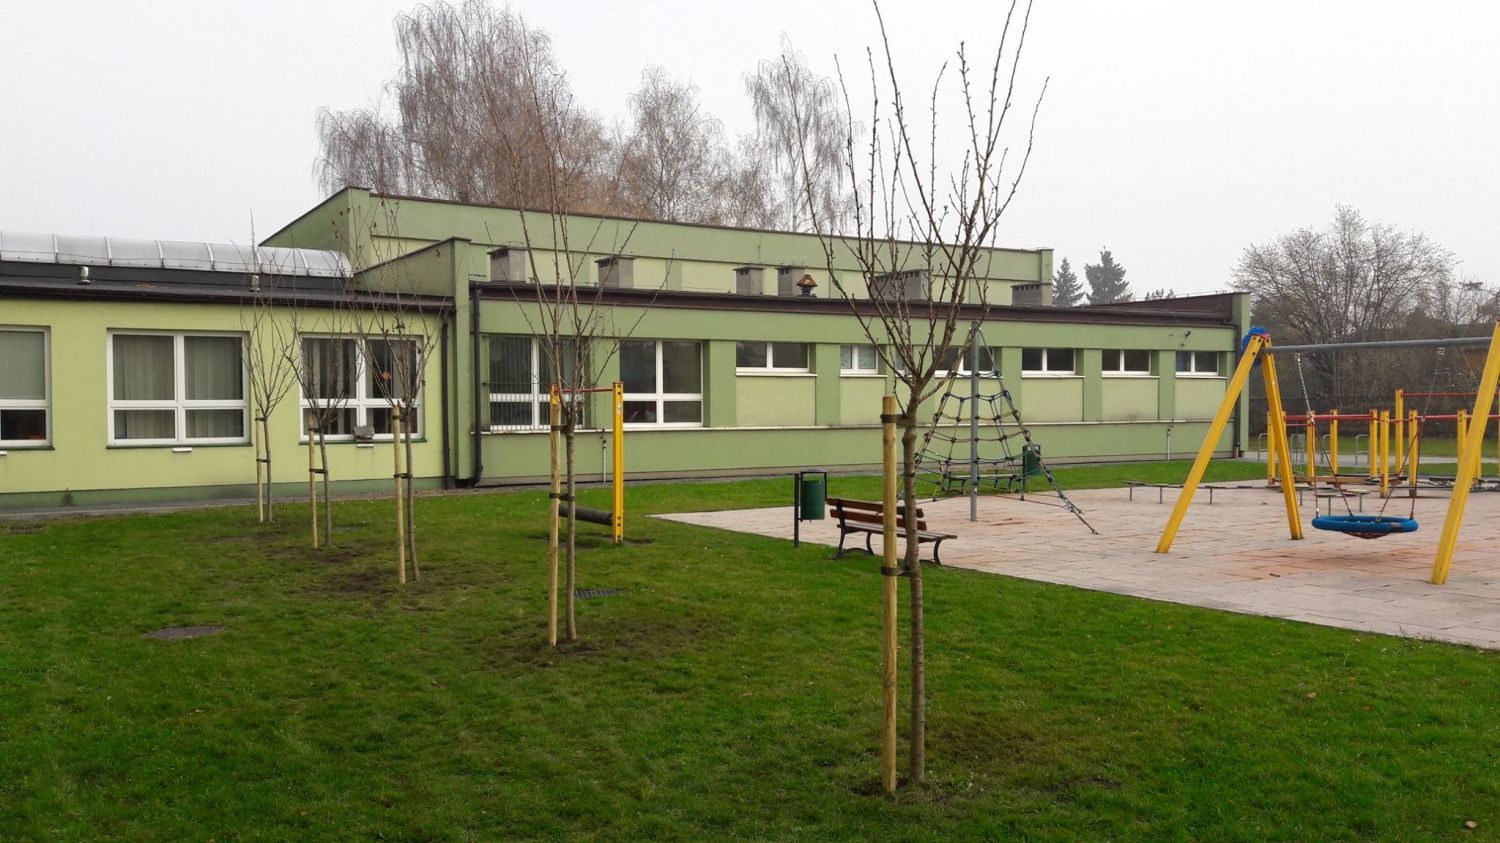 W listopadzie 2019 r. zasadzone zostały drzewa na terenie placu zabaw przy Szkole Podstawowej nr 6.